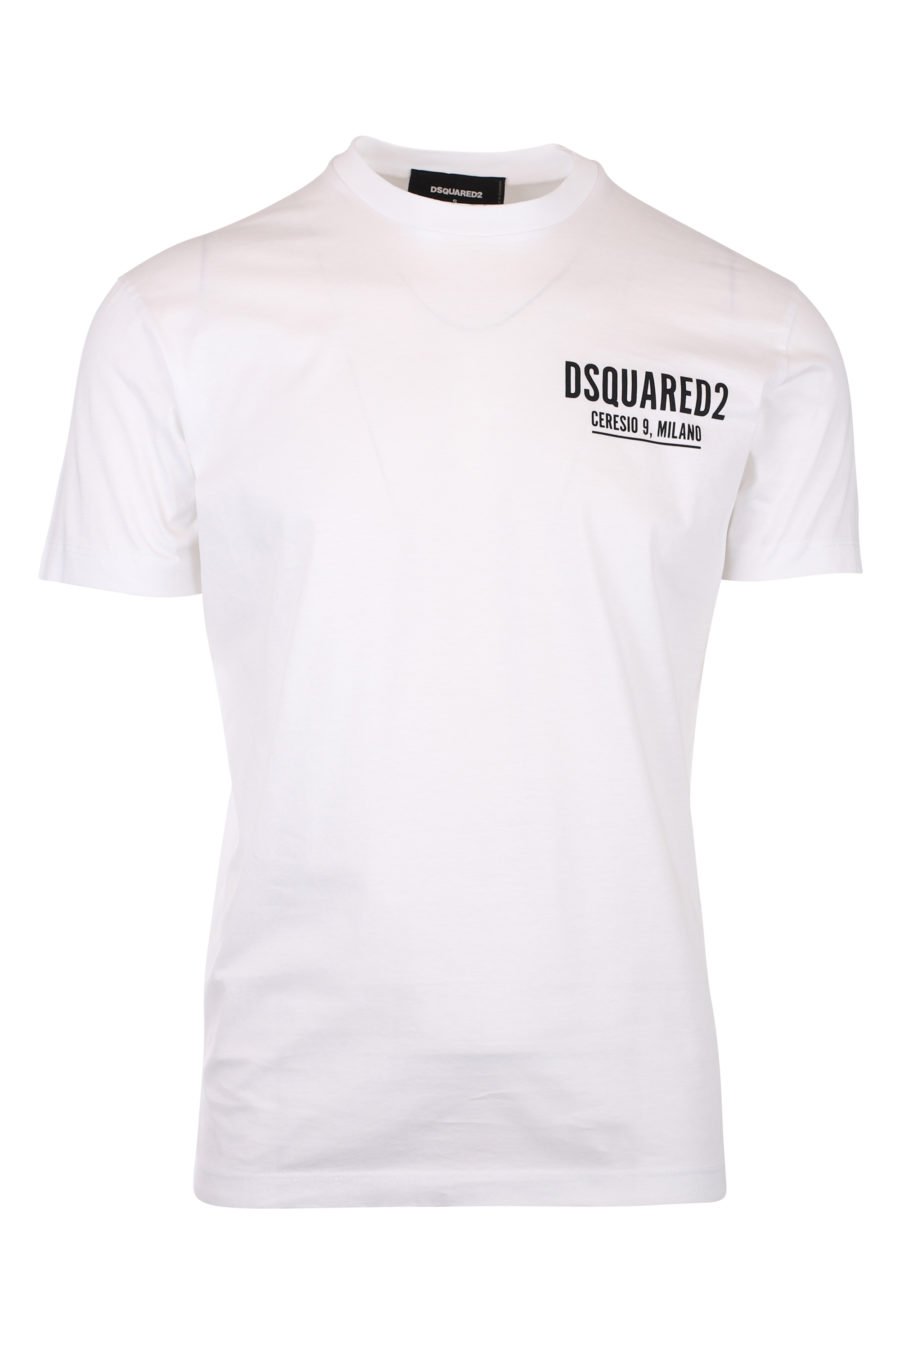 T-shirt weiß mit kleinem Logo ceresio 9 - IMG 9784